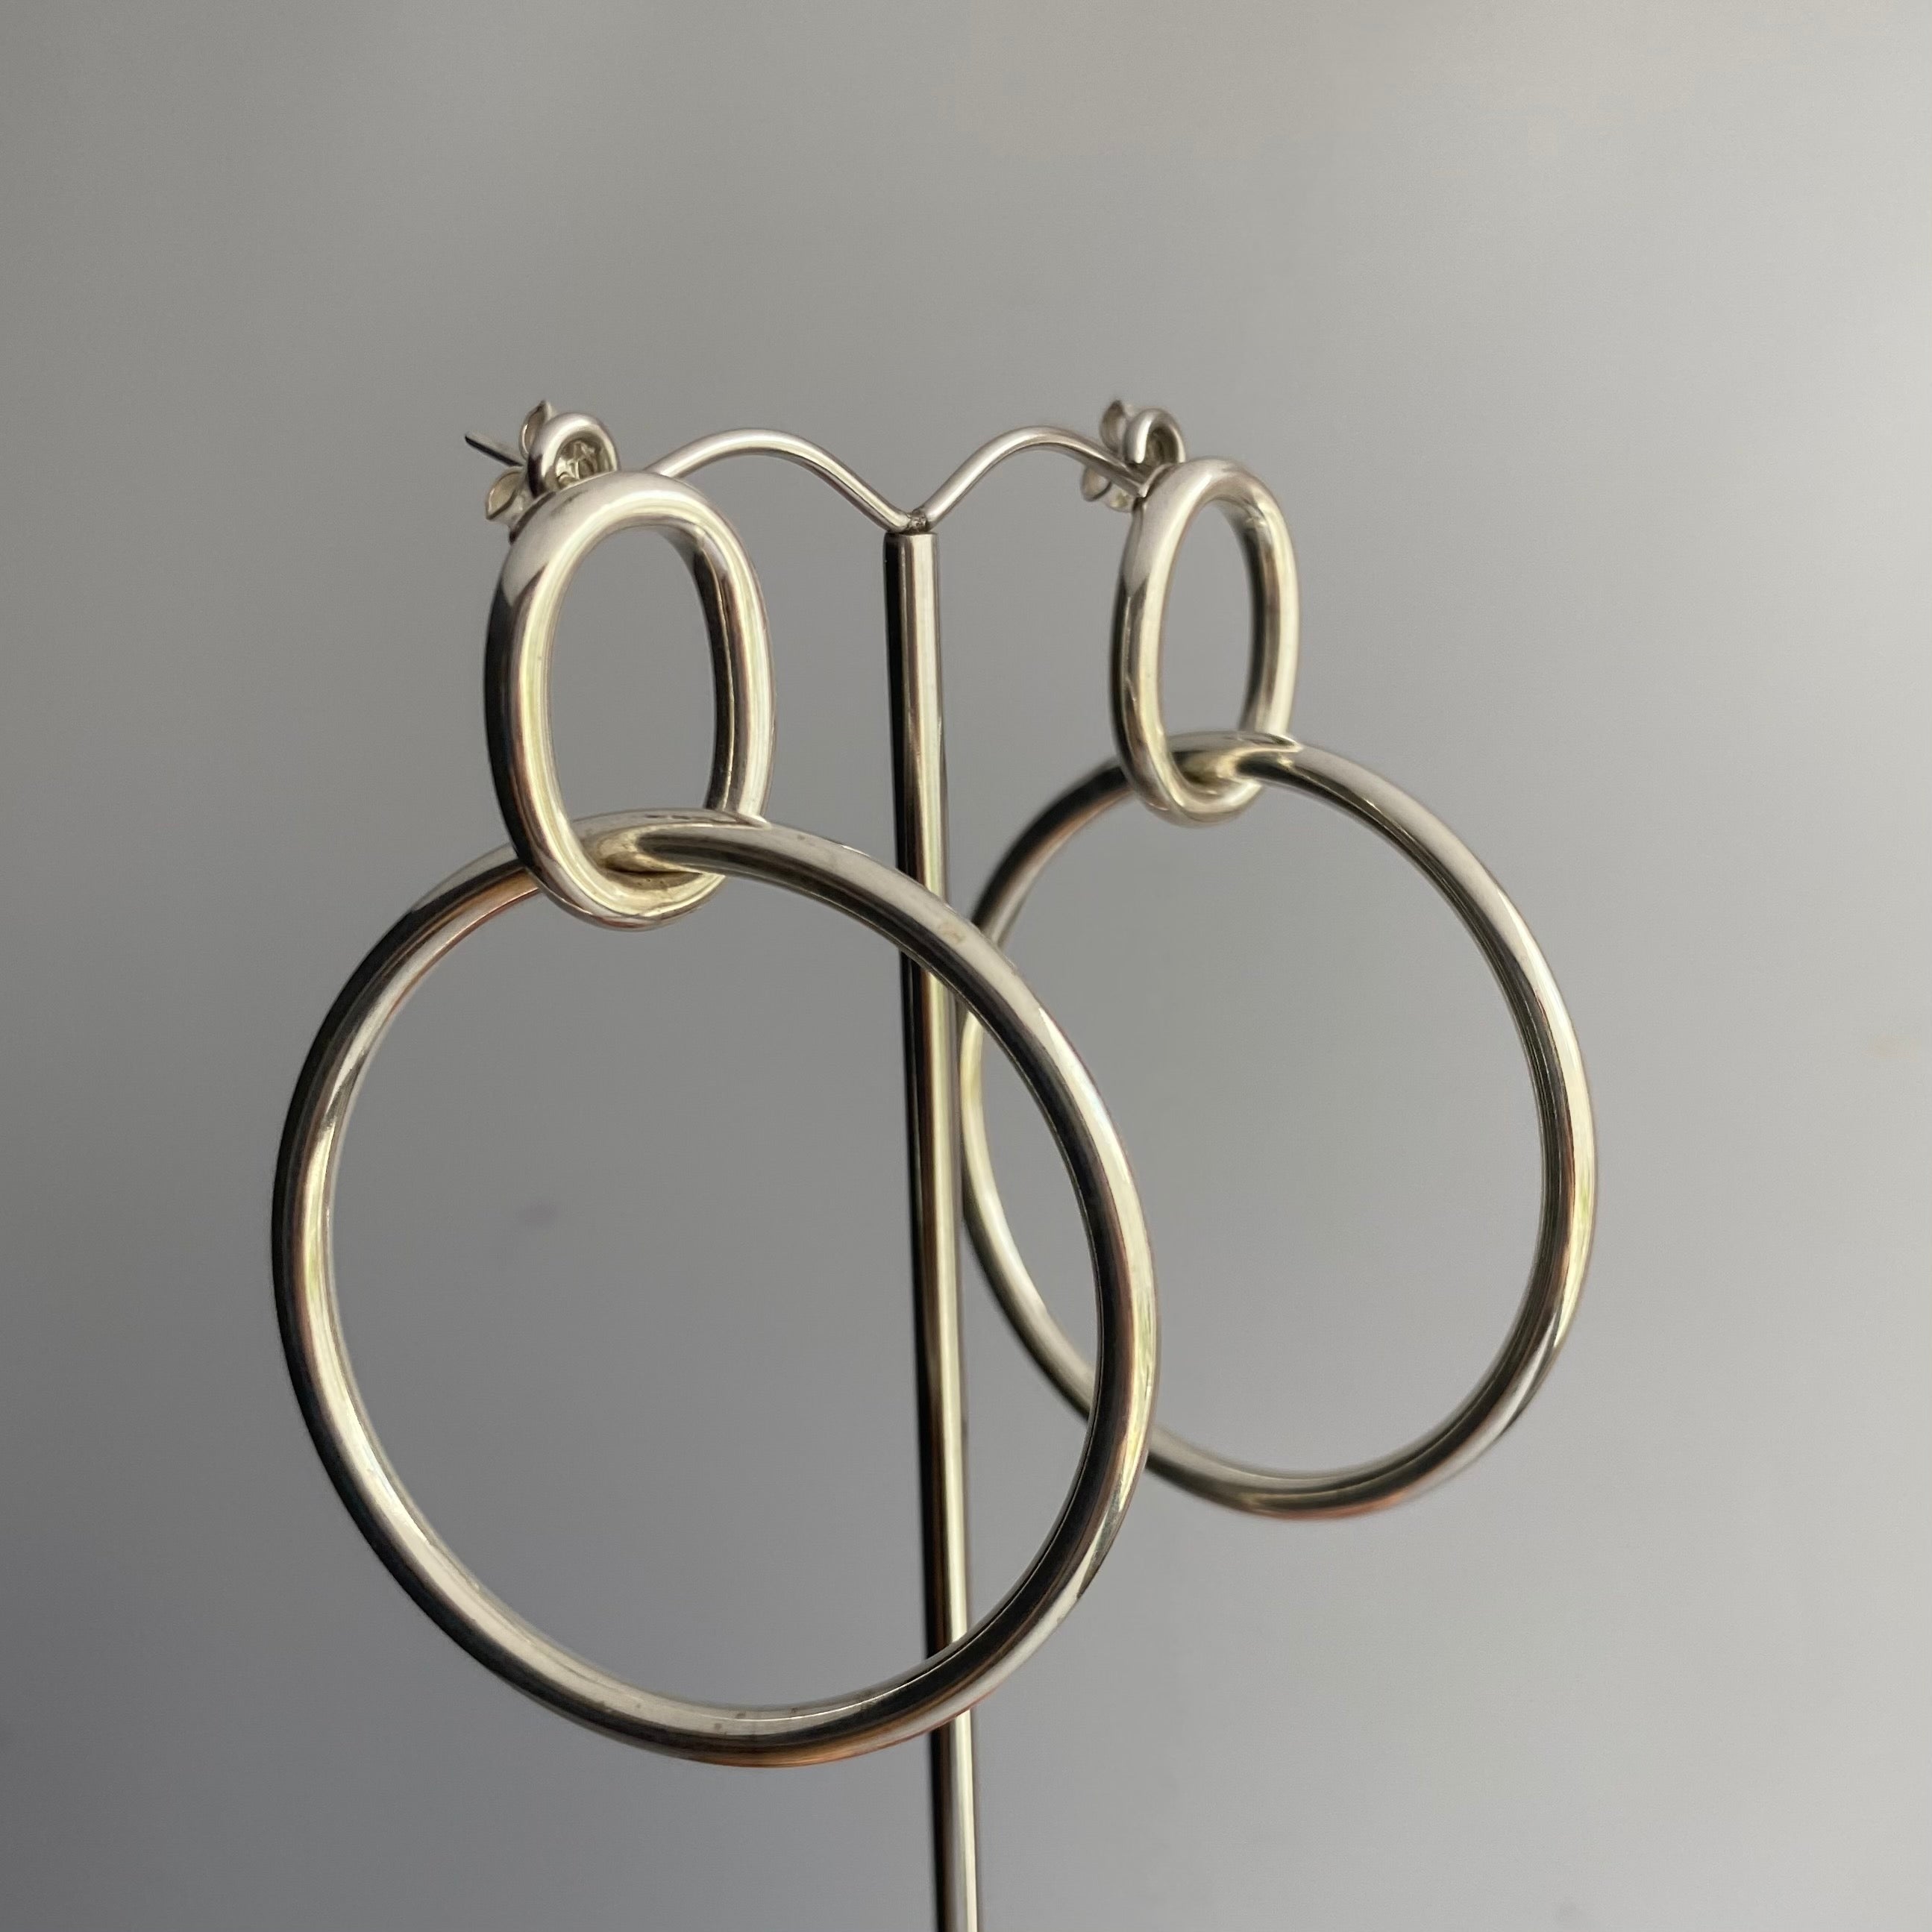 Two Interlinked Sterling Silver Hoop Earrings